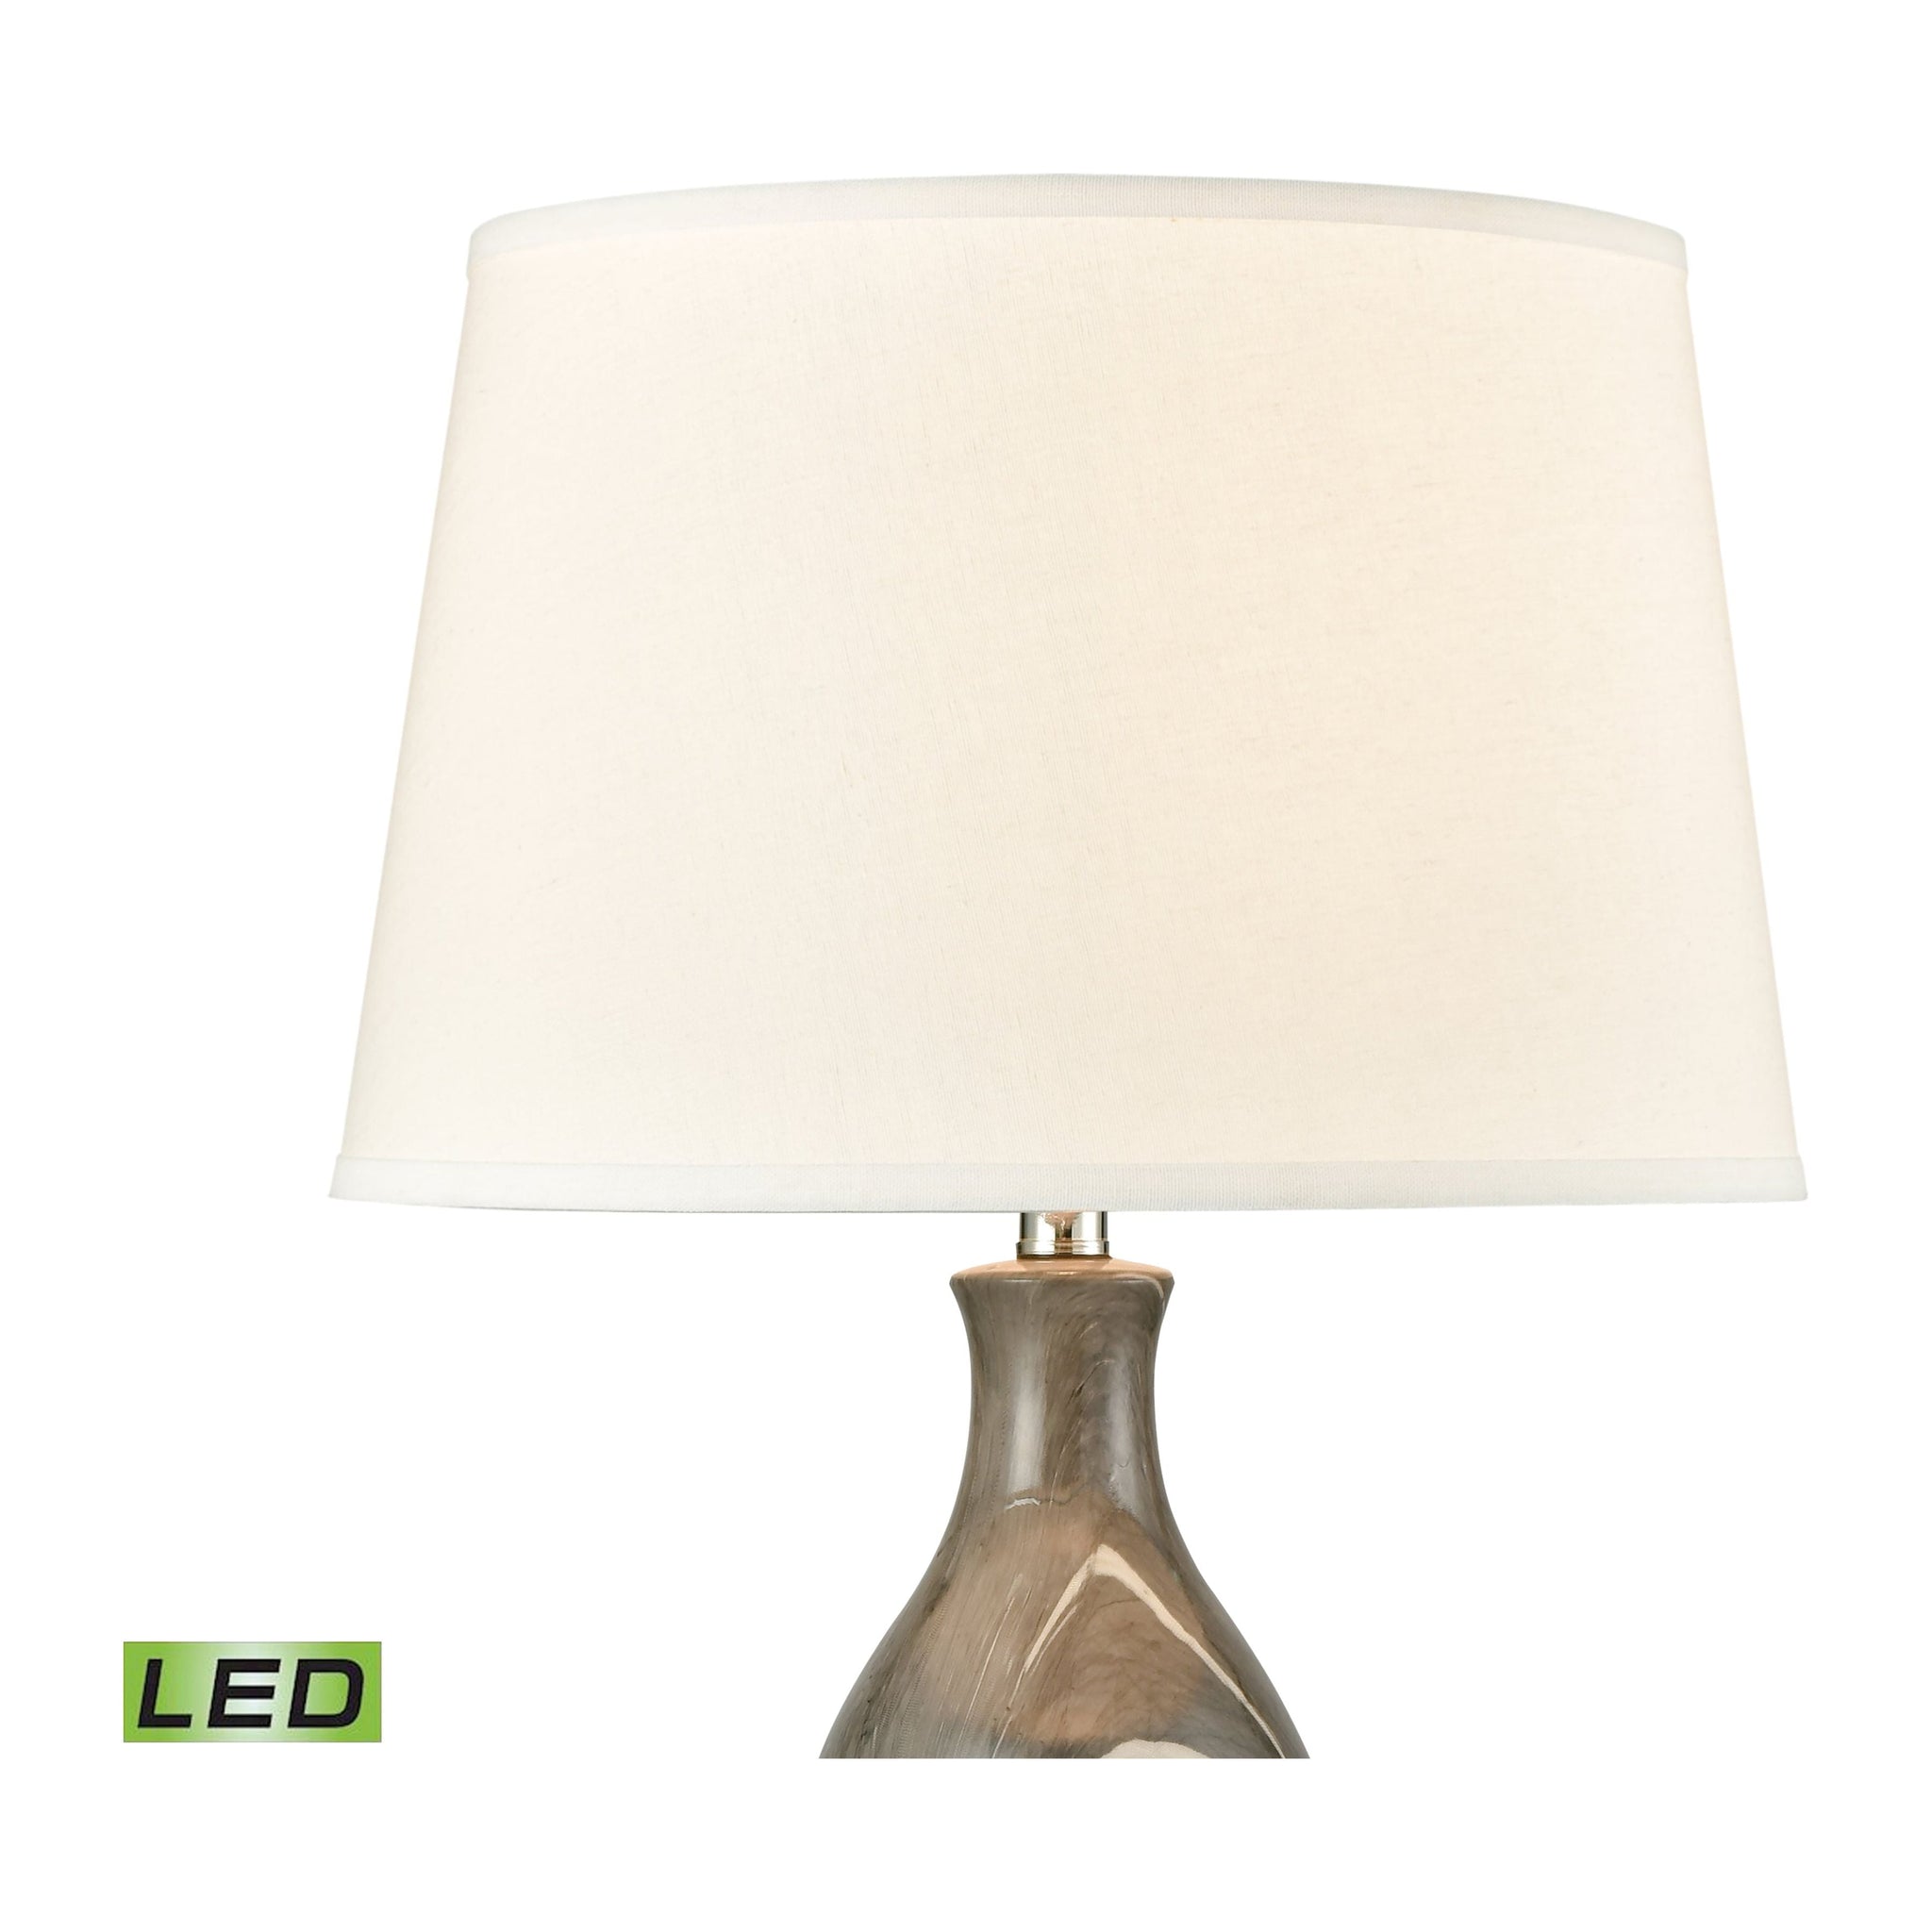 Laguria 28.75" High 1-Light Table Lamp